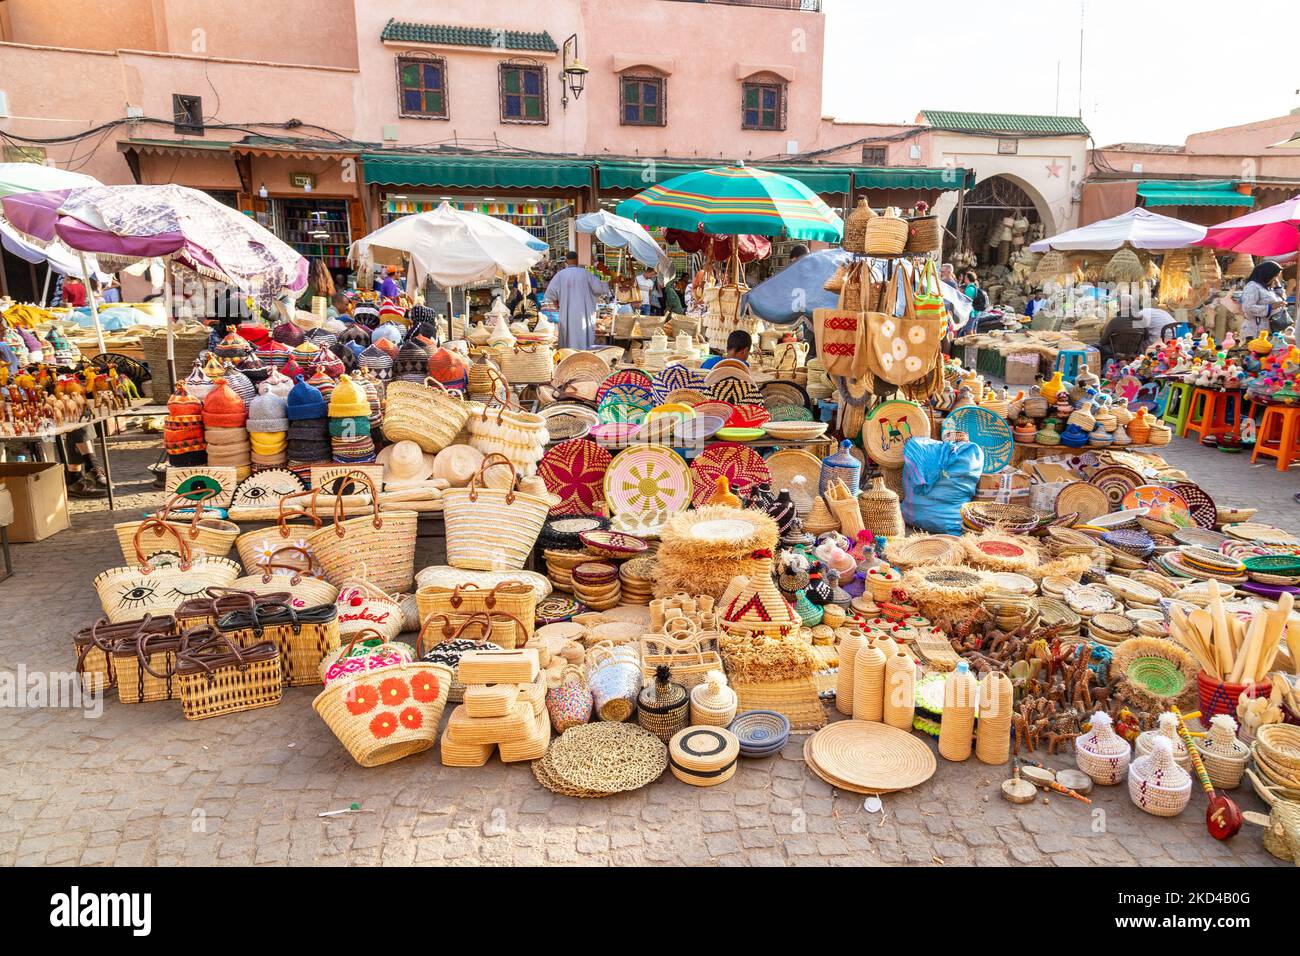 MARRAKECH, MAROCCO - 3rd NOV 22: Una bancarella nella Medina di Marrakech che vende cestini in vimini, borse, ciotole e altri oggetti. La gente può essere vista nea Foto Stock